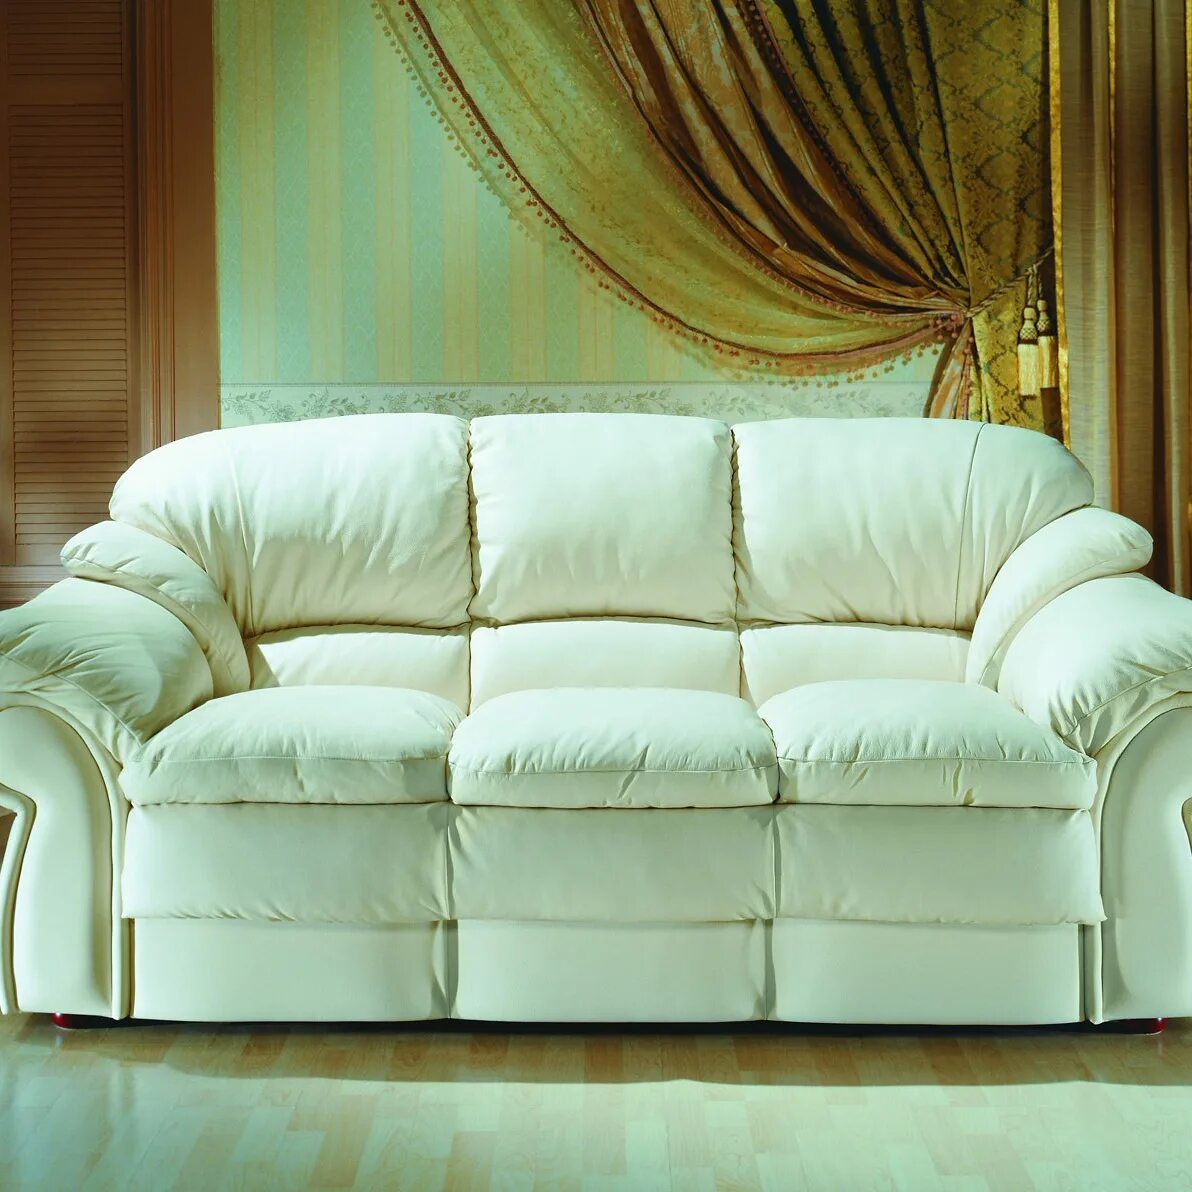 Кожаный диван светлый. Мягкий диван. Красивые диваны. Красивые мягкие диваны. Диван купить алиэкспресс